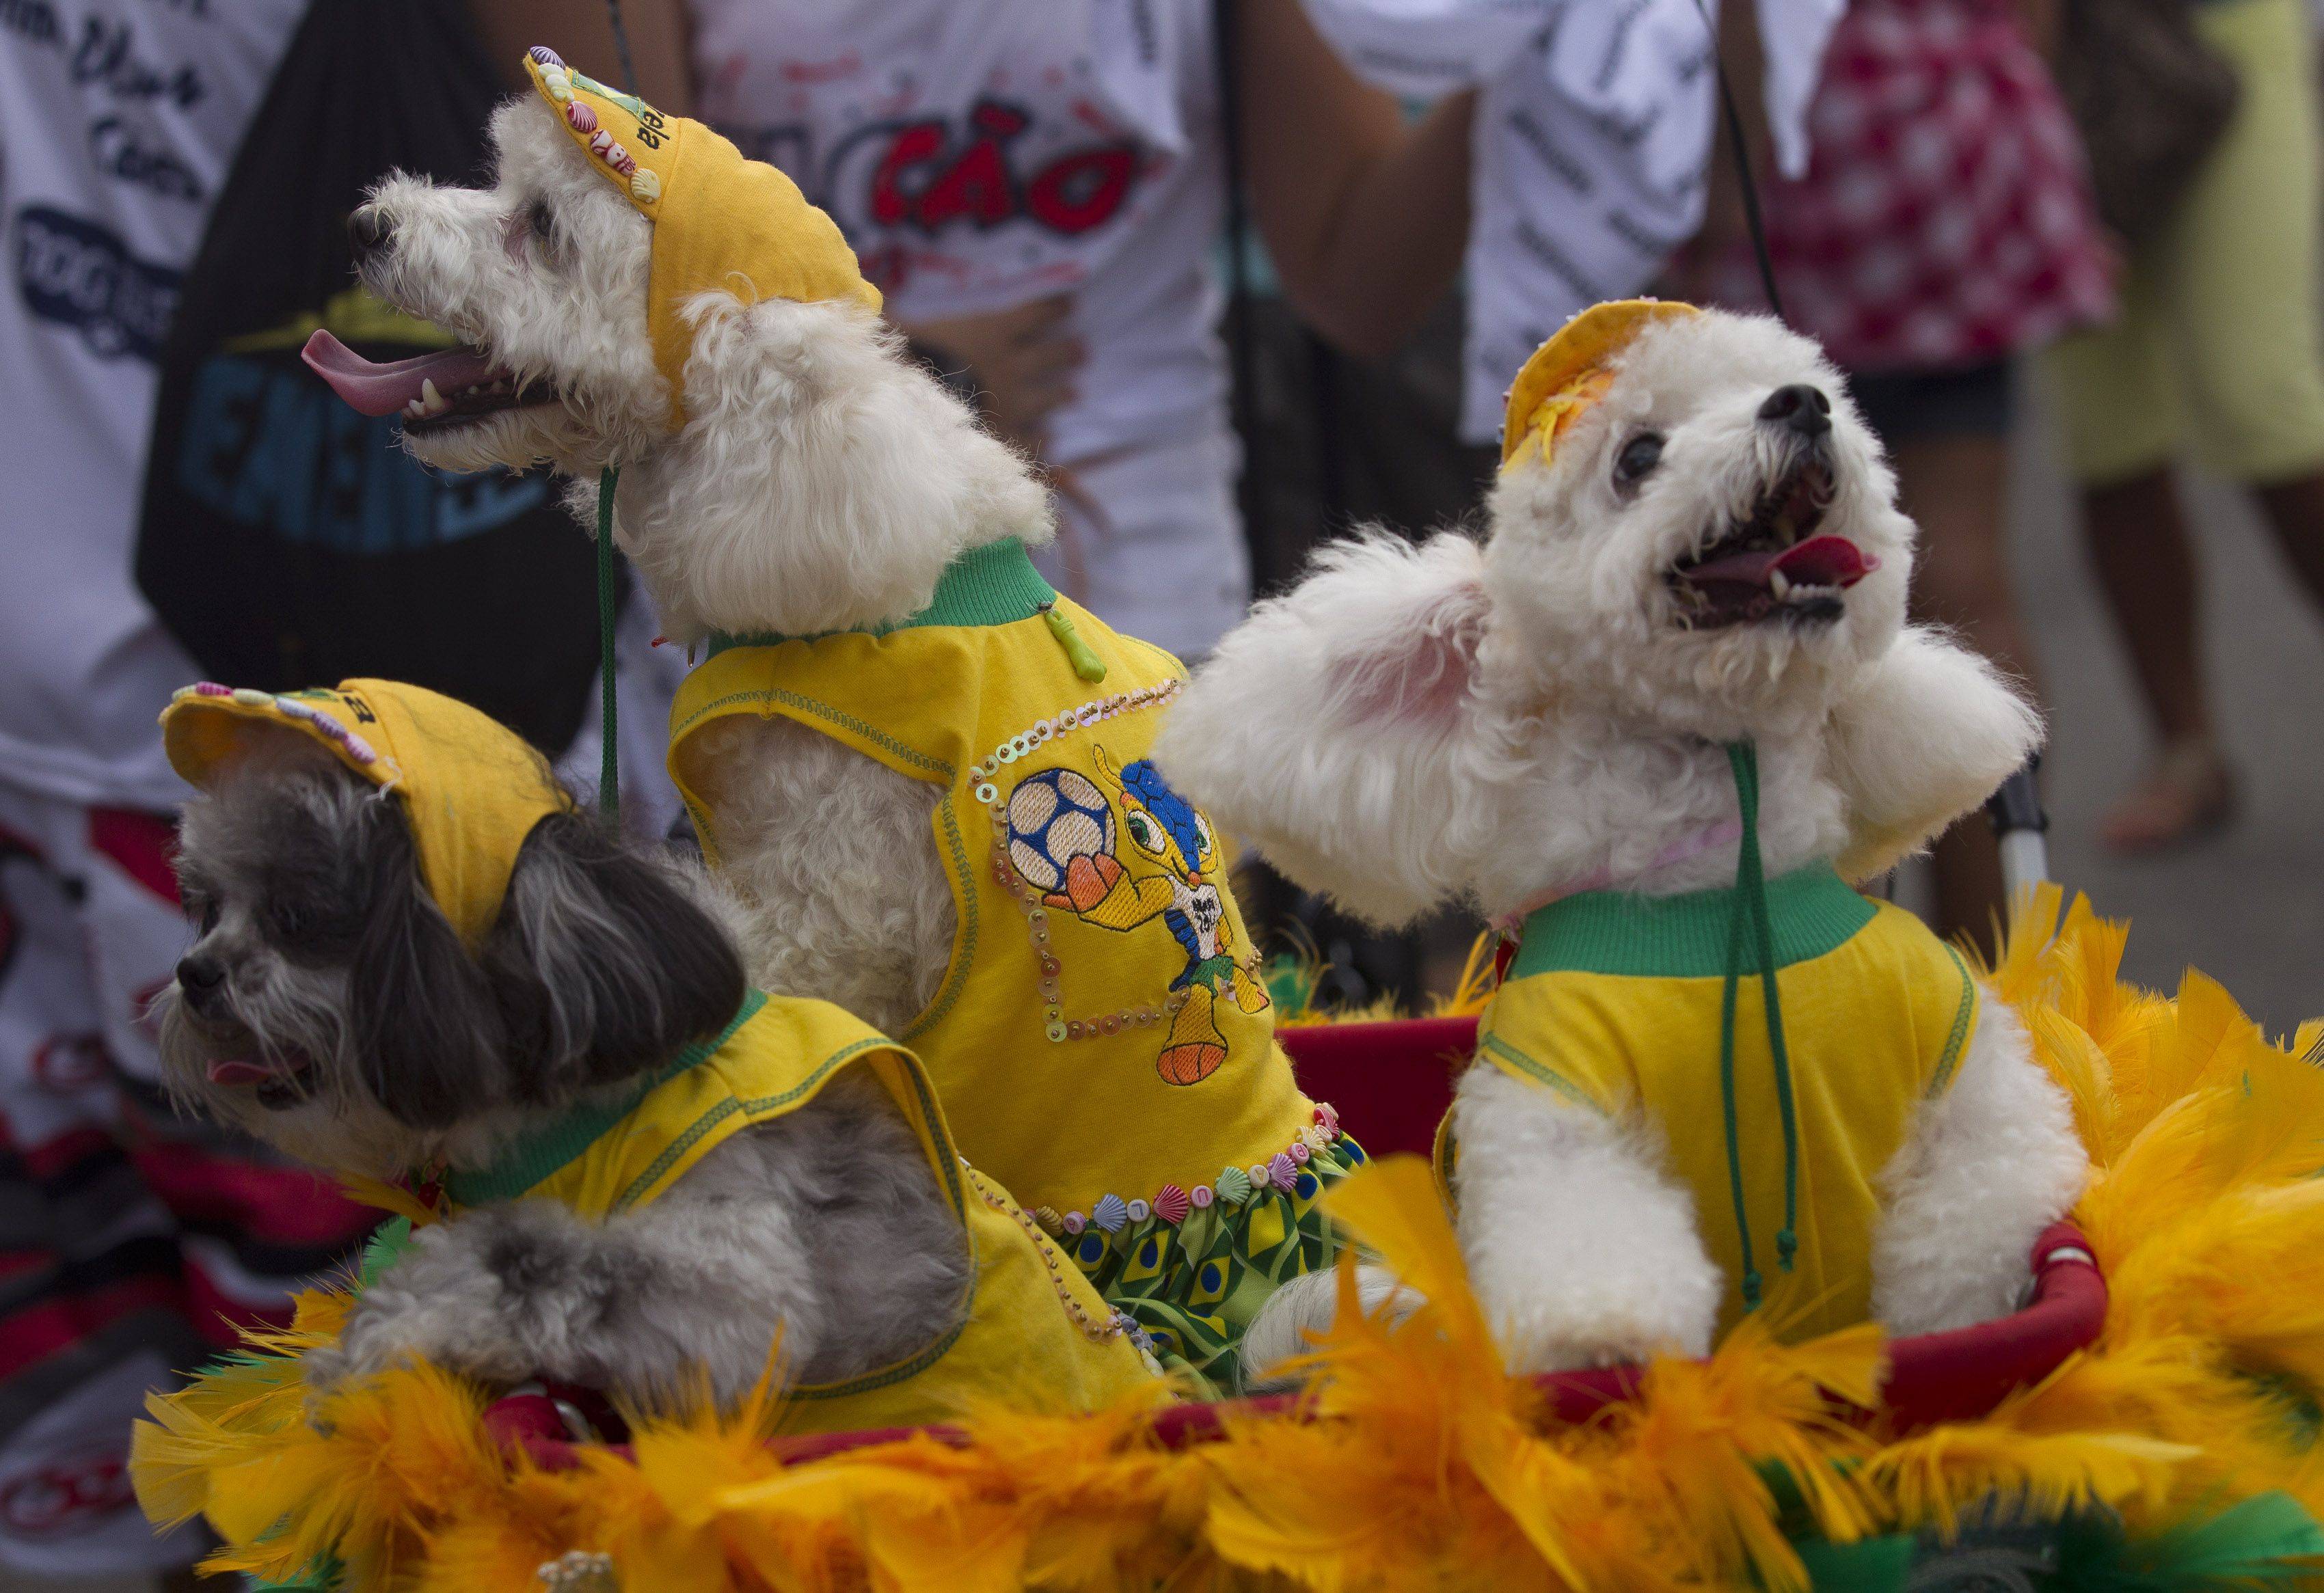 Бразильский карнавал в рио-де-жанейро: самба никогда не лжет